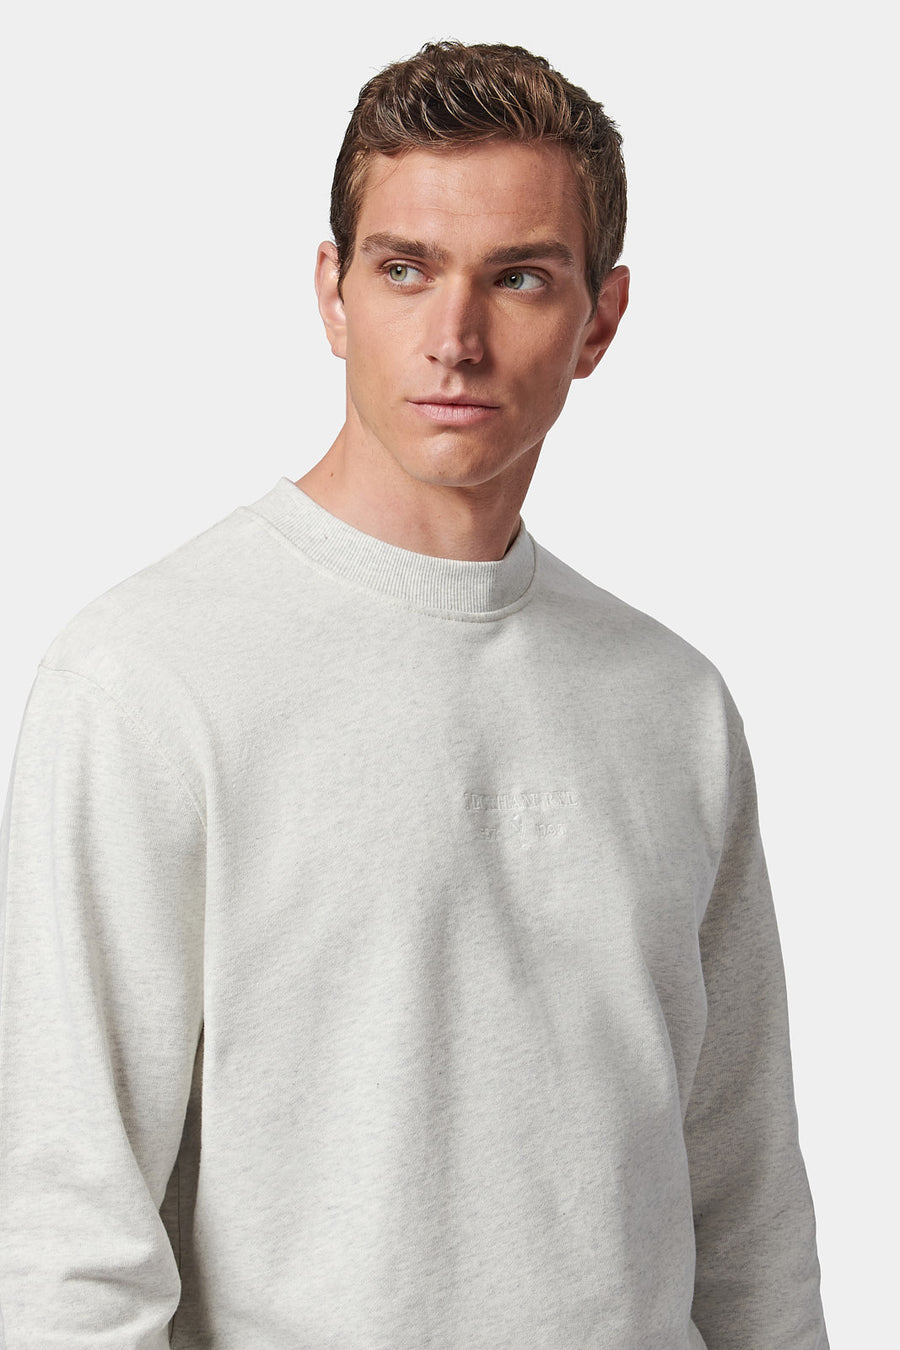 Essential French Terry Sweatshirt in Grey Marl